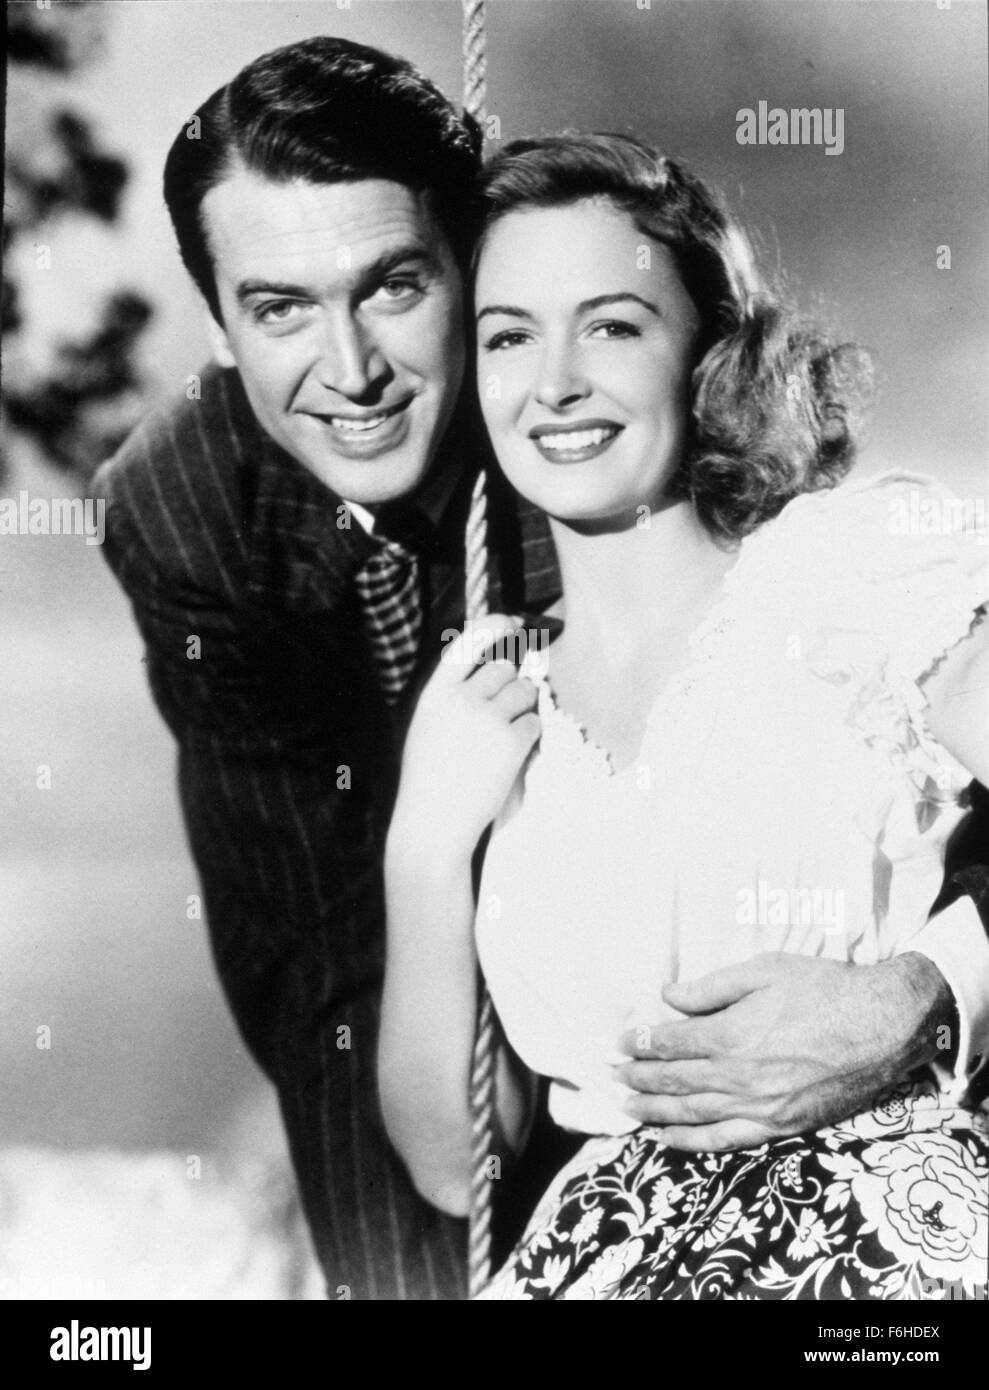 1946, Filmtitel: Es ist ein wundervolles Leben, Regie: FRANK CAPRA, Studio: RKO, abgebildet: DONNA REED, JAMES STEWART, SWING, Romantik, männliche umarmt von hinten zu umarmen. (Bild Kredit: SNAP) Stockfoto